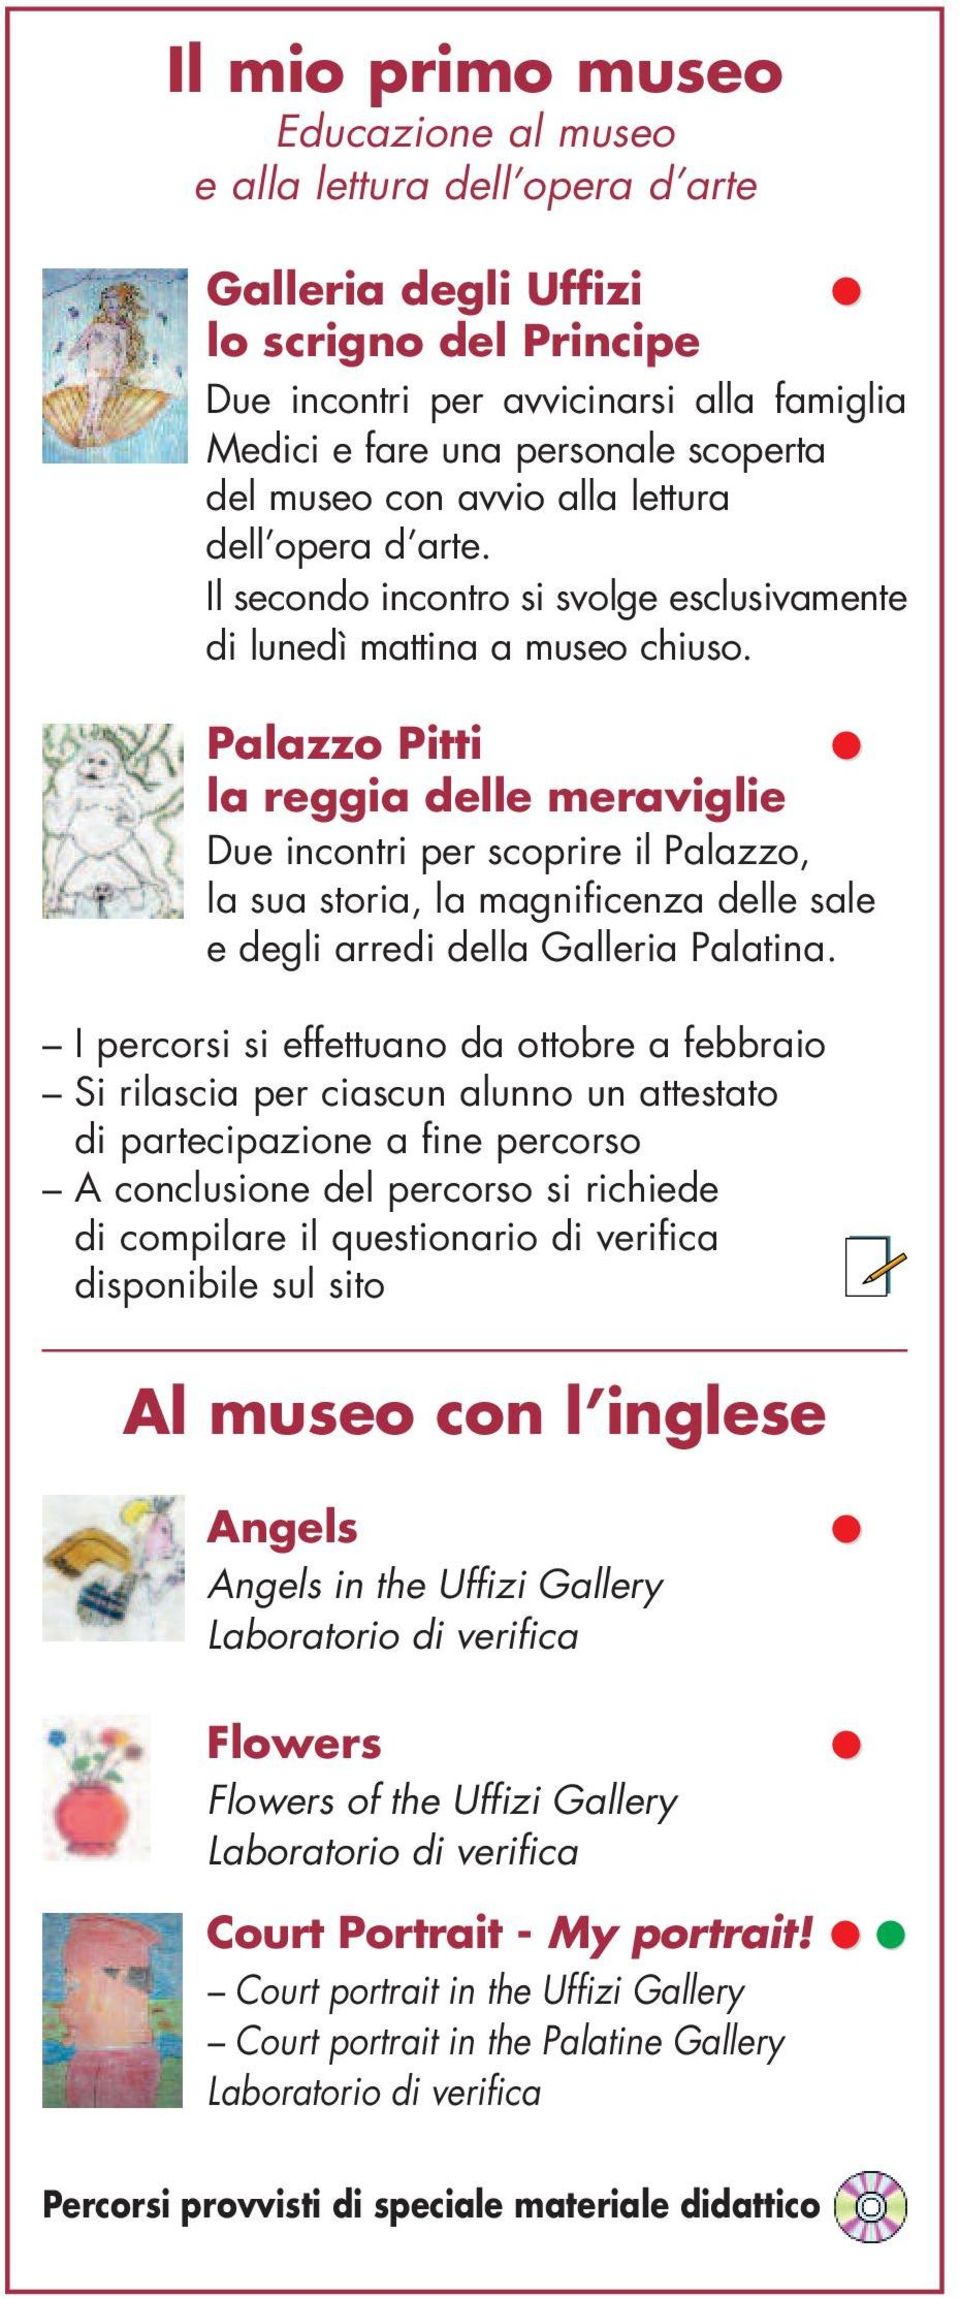 Palazzo Pitti la reggia delle meraviglie Due incontri per scoprire il Palazzo, la sua storia, la magnificenza delle sale e degli arredi della Galleria Palatina.